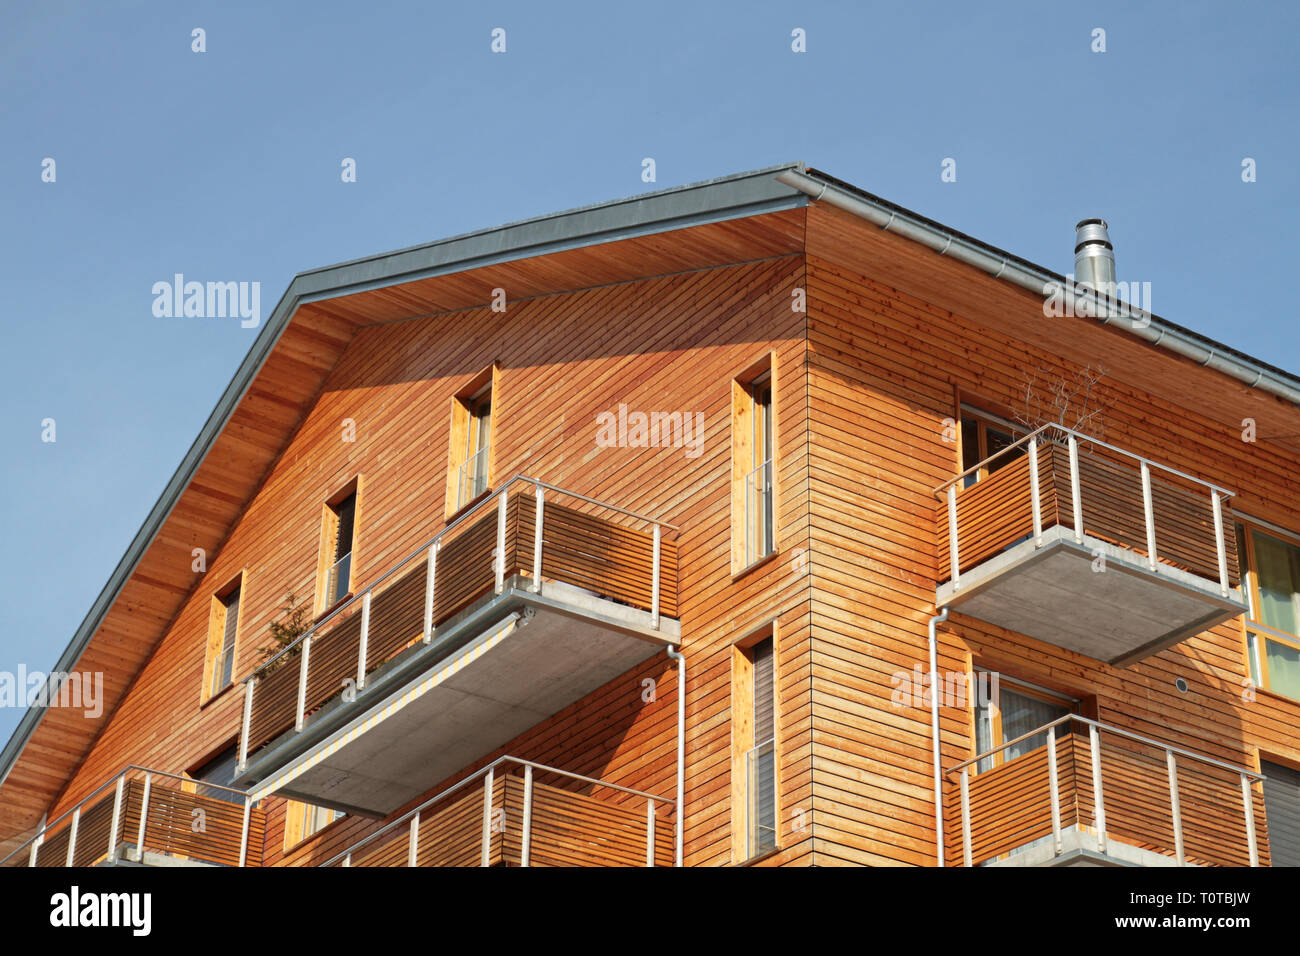 concrete building with wooden facade Stock Photo